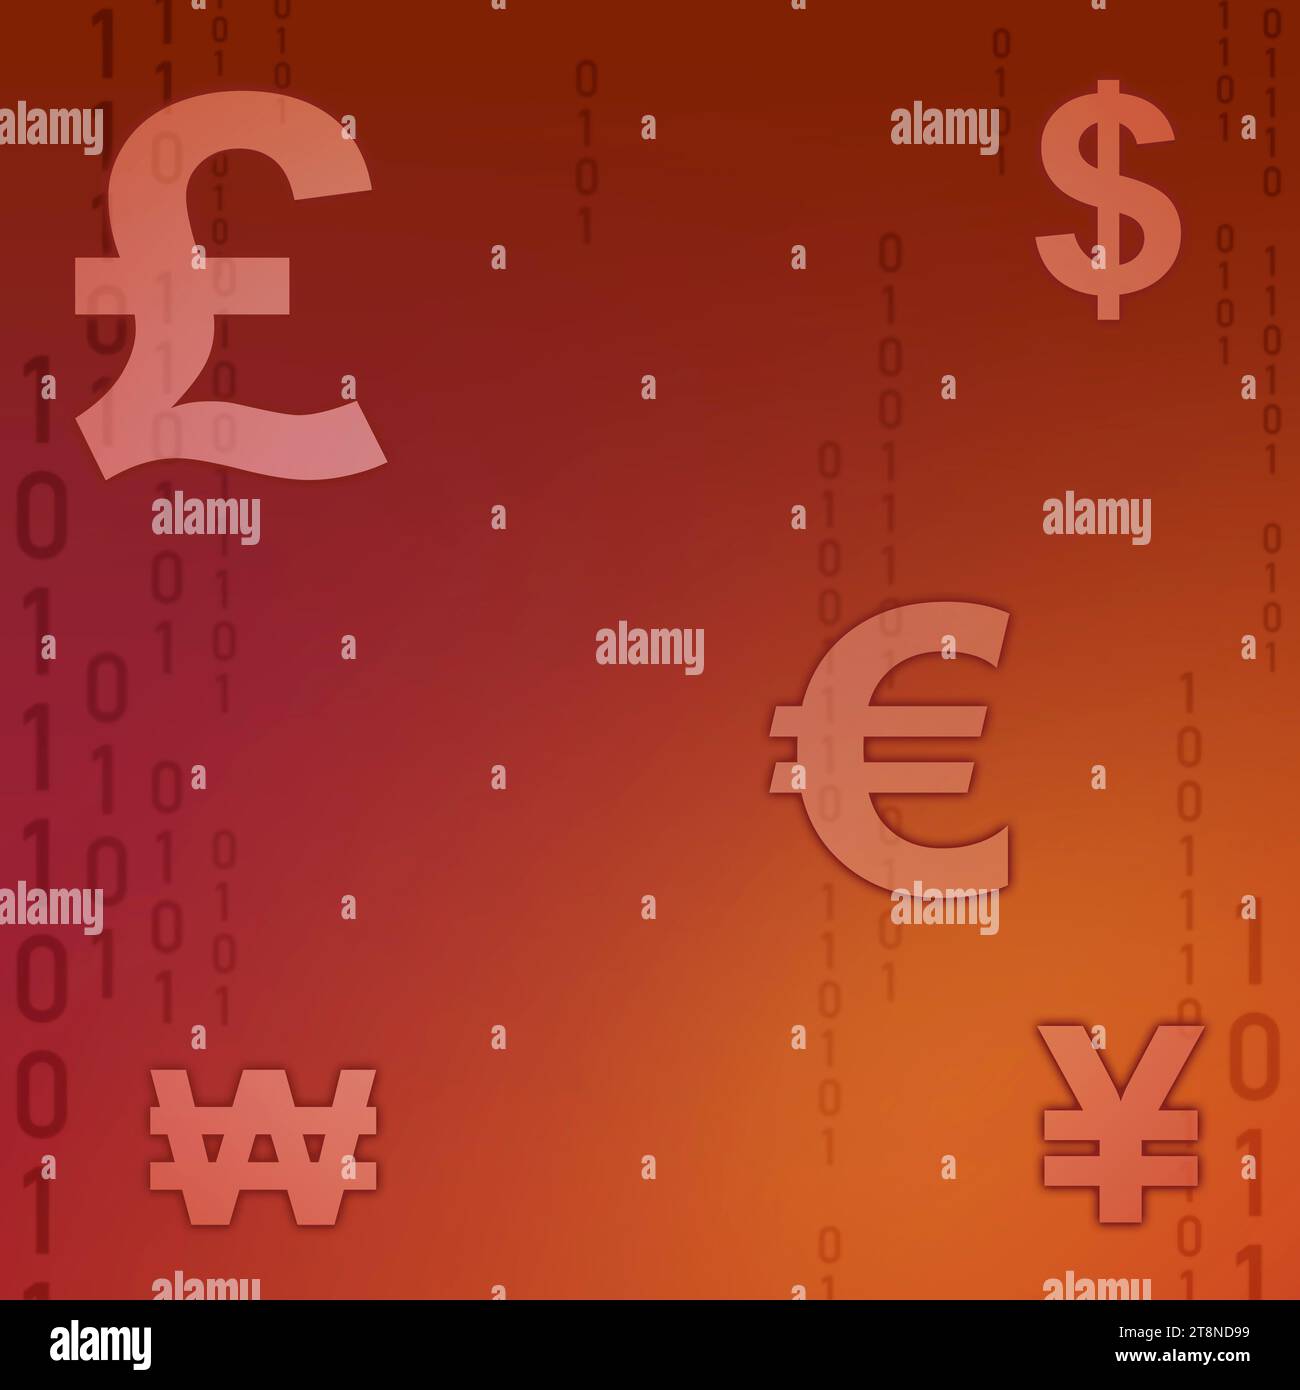 Verschiedene Währungssymbole werden auf einem leuchtend roten Hintergrund angezeigt. Die Symbole stehen für verschiedene globale Währungen wie US-Dollar, Euro und Britisch Stockfoto